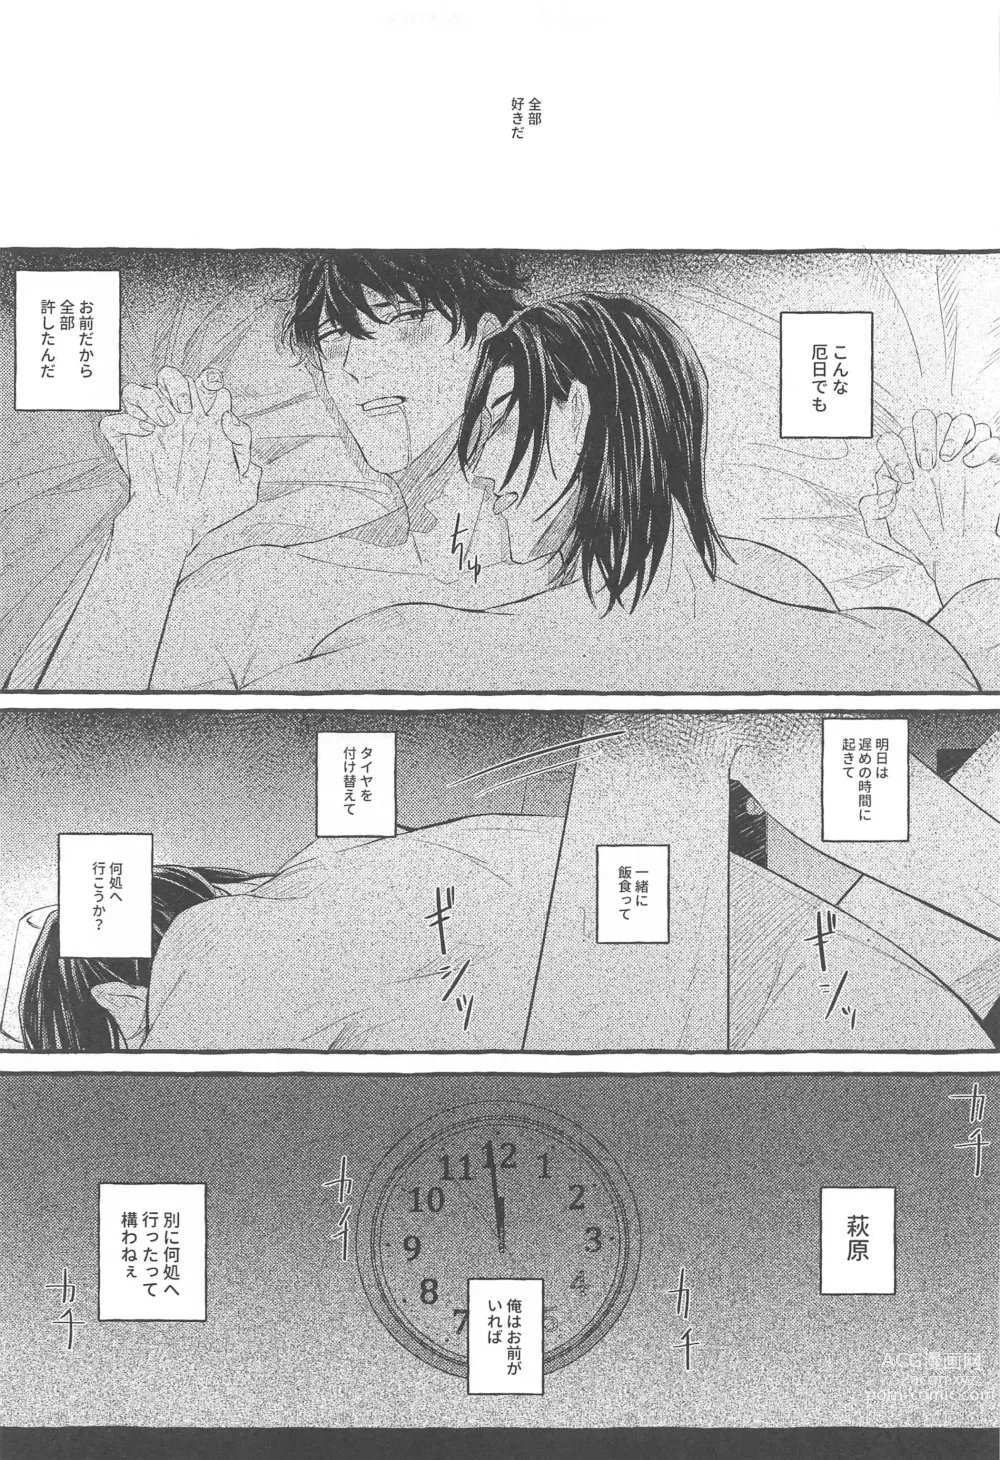 Page 44 of doujinshi Ore wa Koitsu ni Yowai